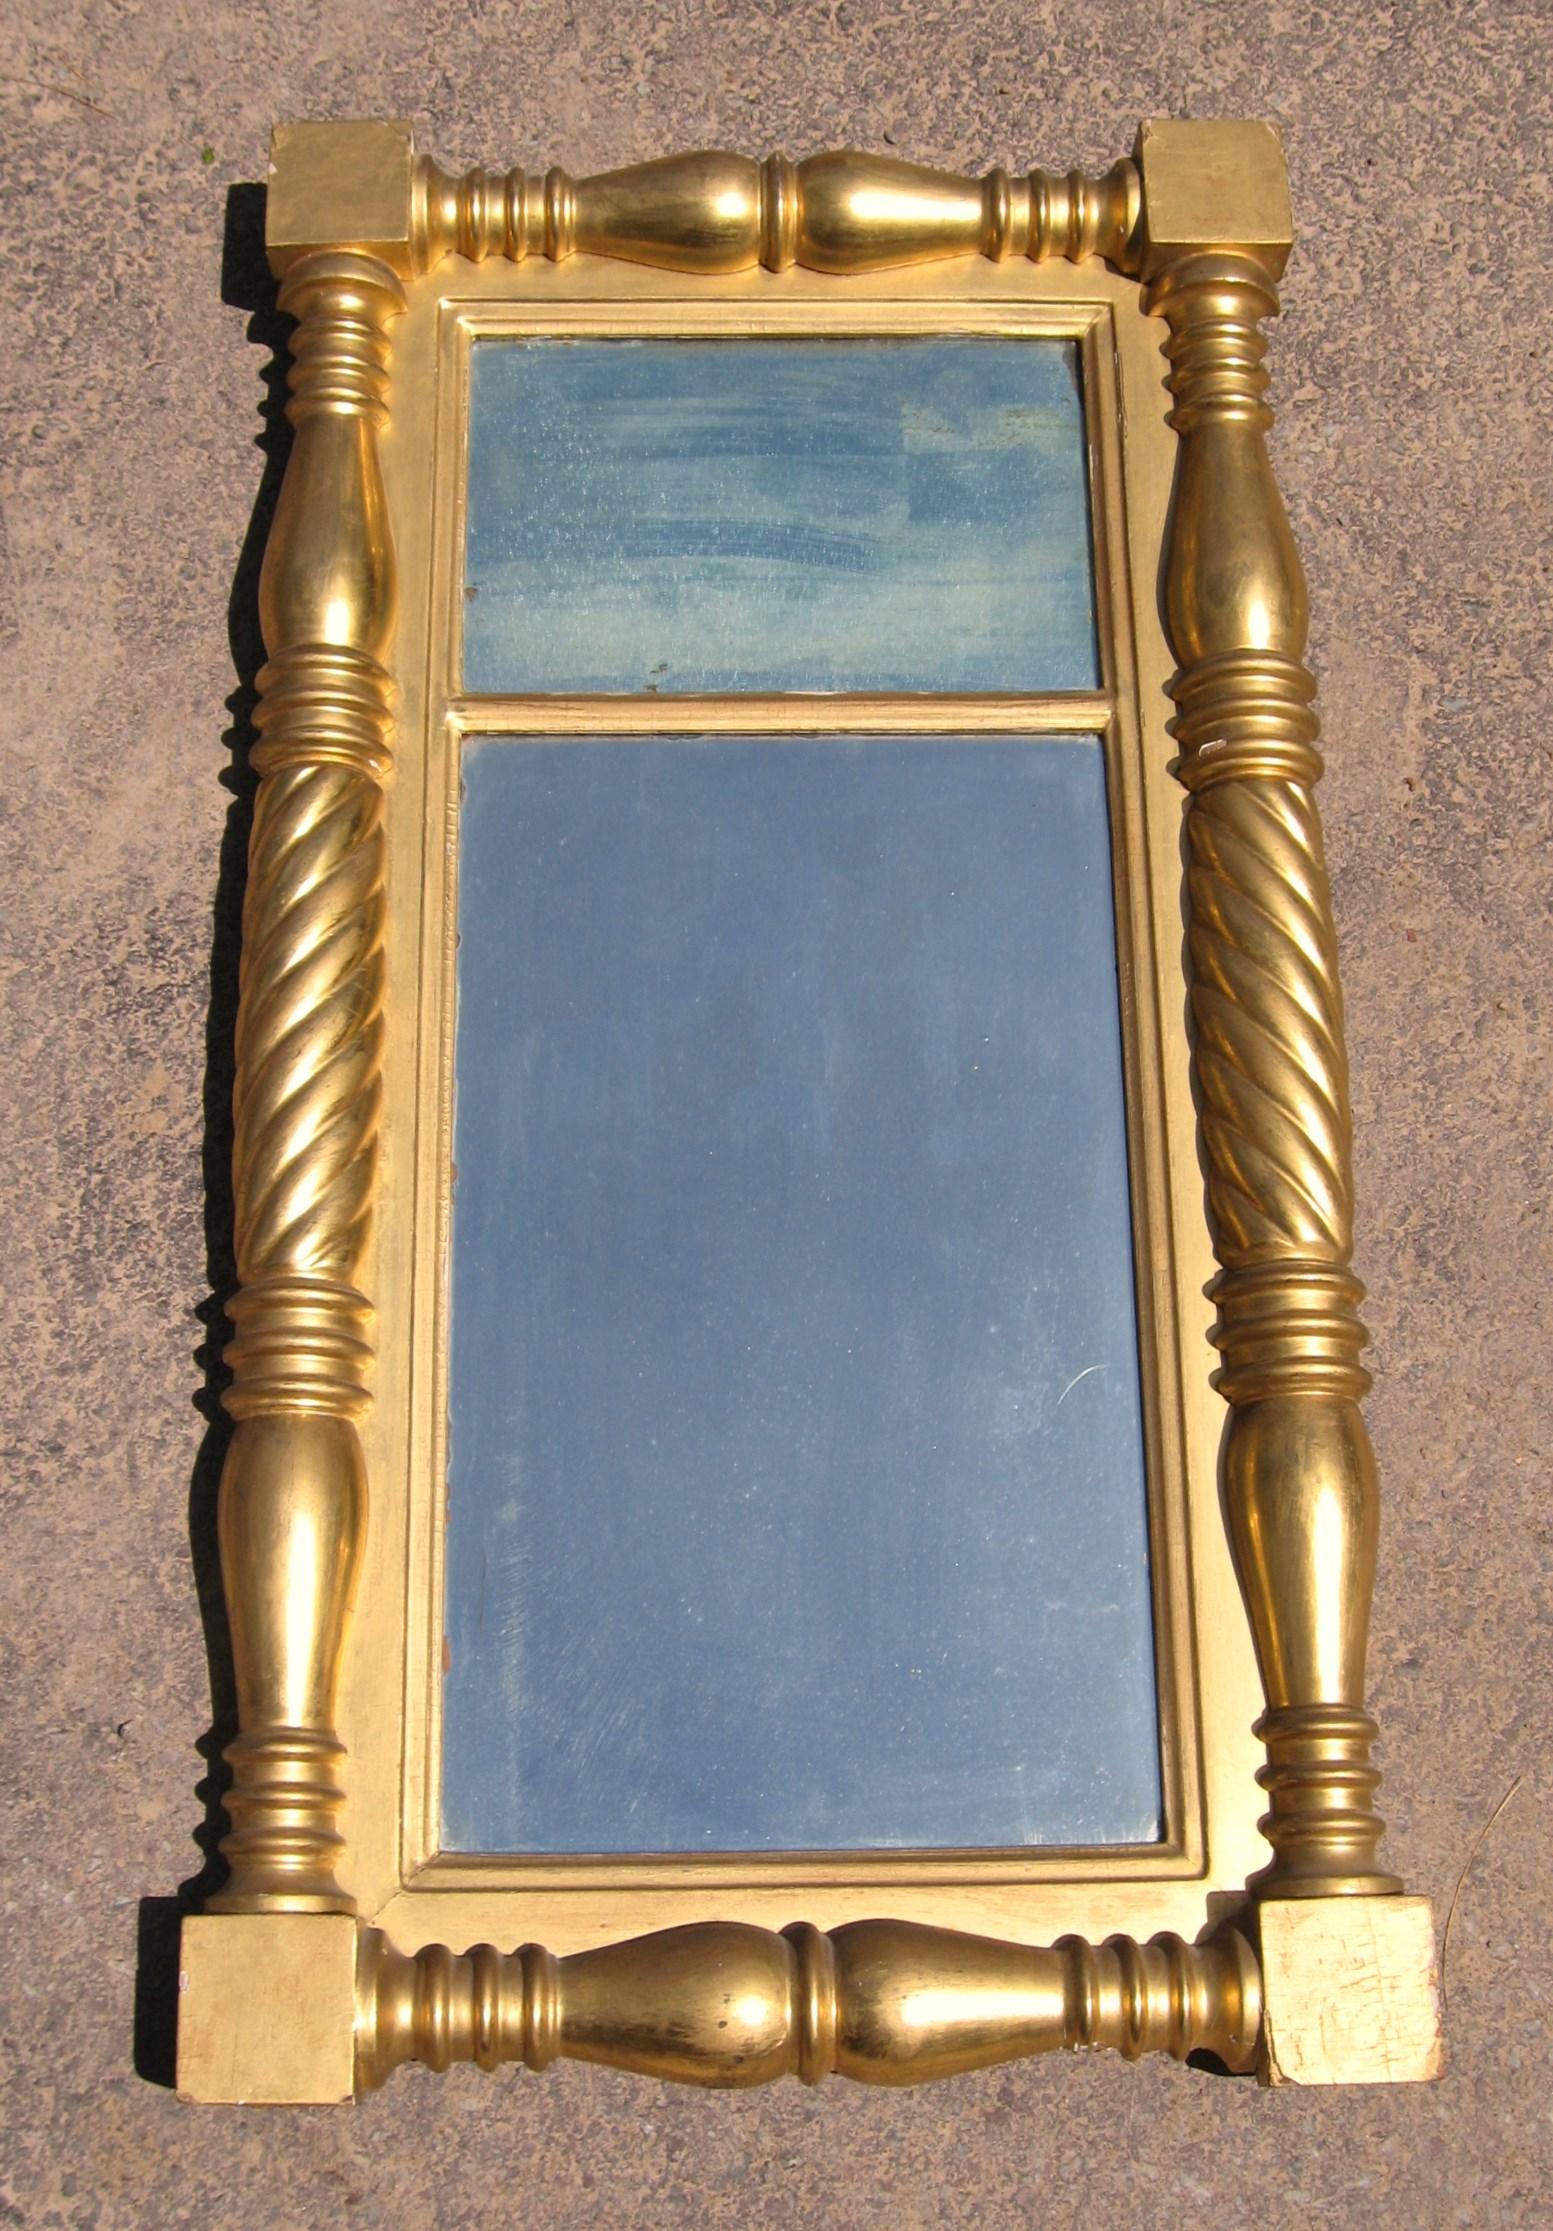 Wunderschöner zweiteiliger Spiegel im neoklassizistischen Stil mit Blattvergoldung, der den ursprünglichen Spiegel und die Vergoldung beibehält. Messung 19 1/8 Zoll breit x 35 3/8 Zoll hoch x 2 3/4 Zoll tief, geringfügige Abnutzung wie auf den Fotos